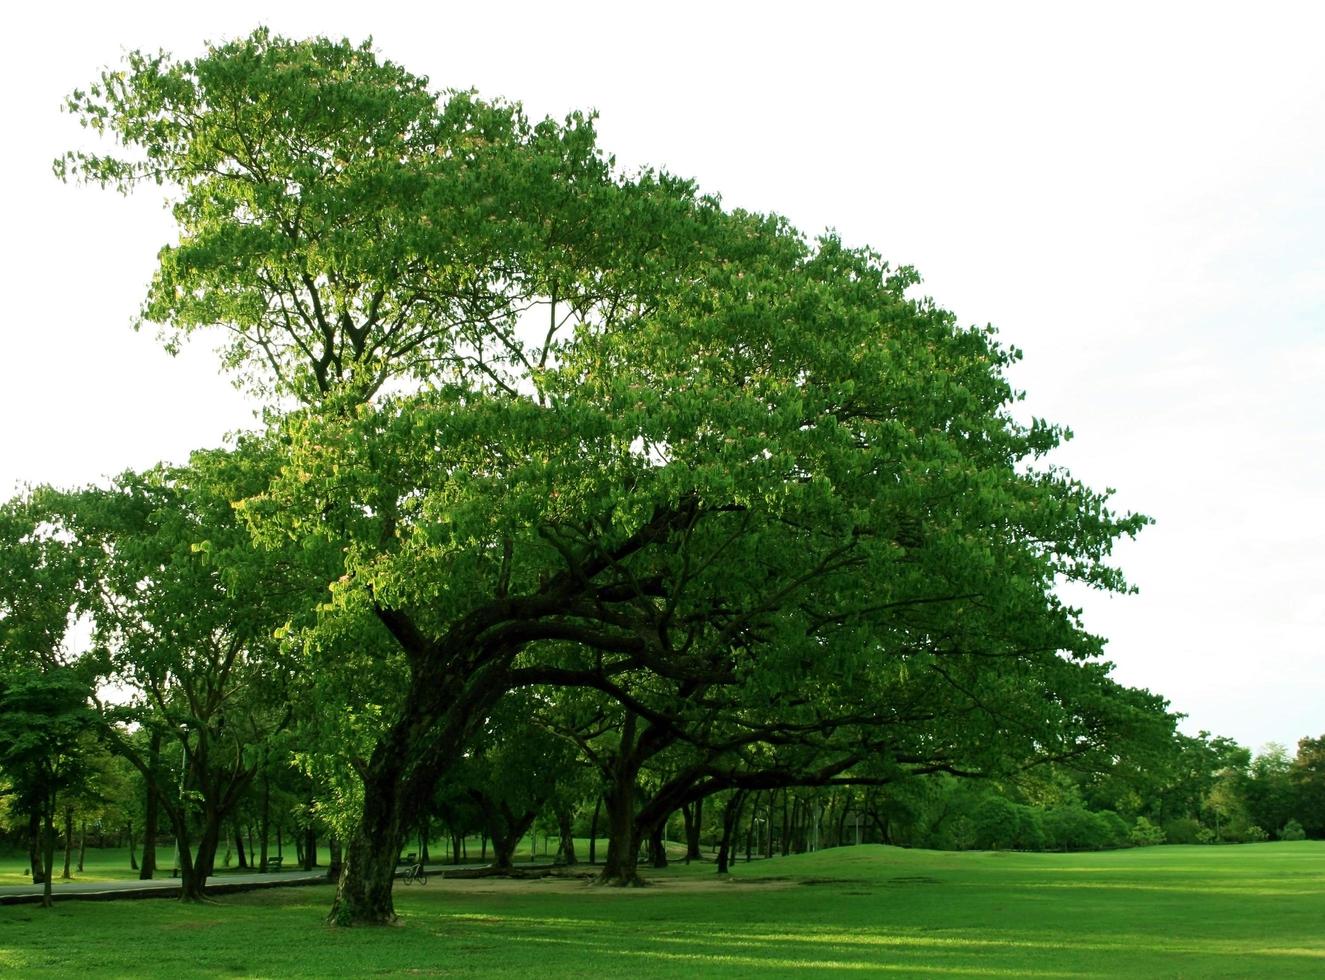 árboles grandes y pasto verde foto